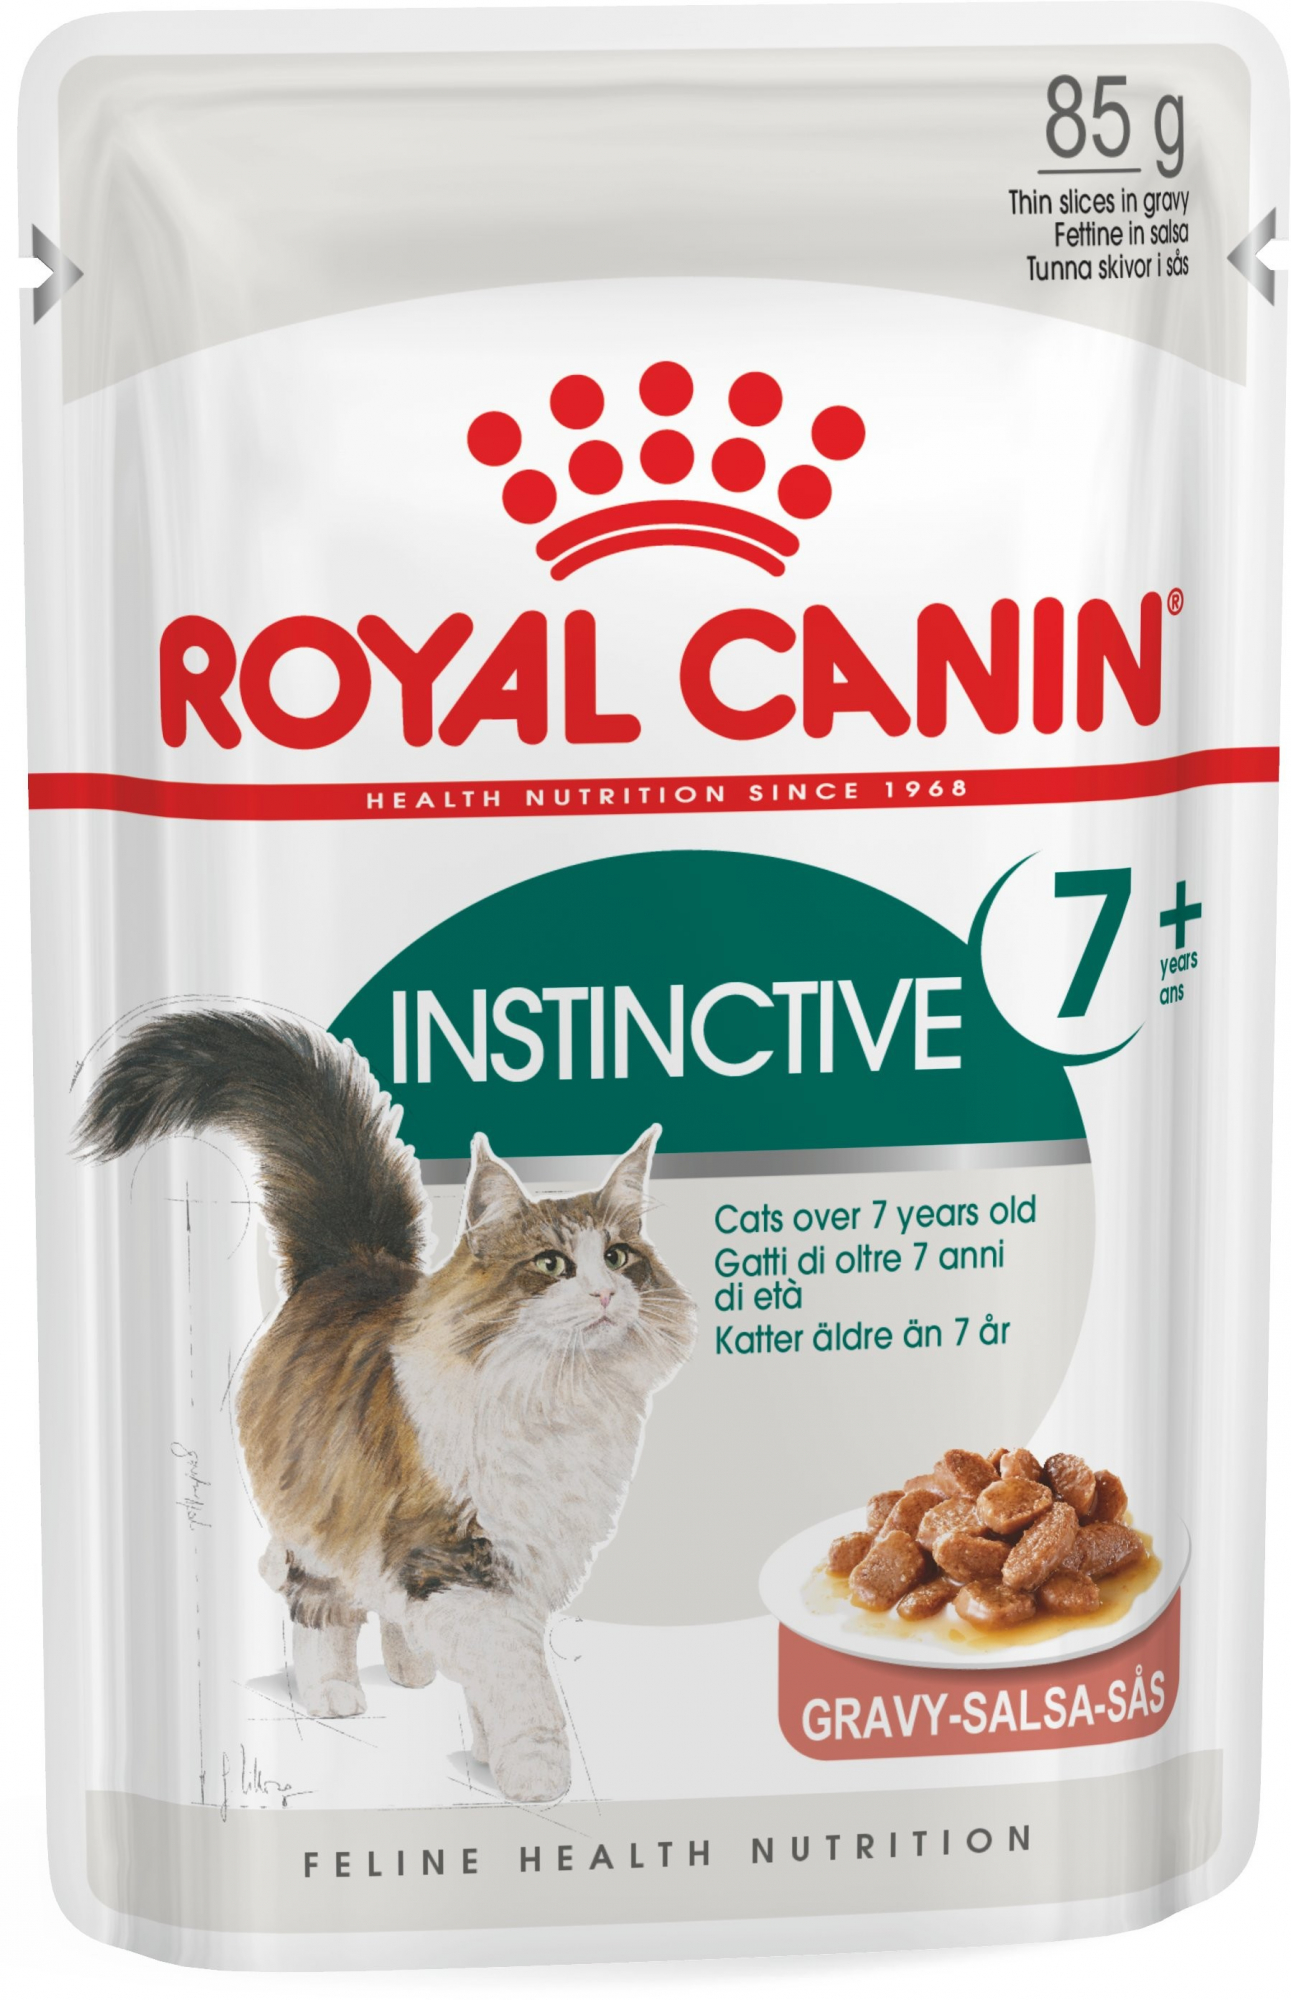 Royal Canin Instinctive Pâtée en sauce pour chat de 7ans et plus